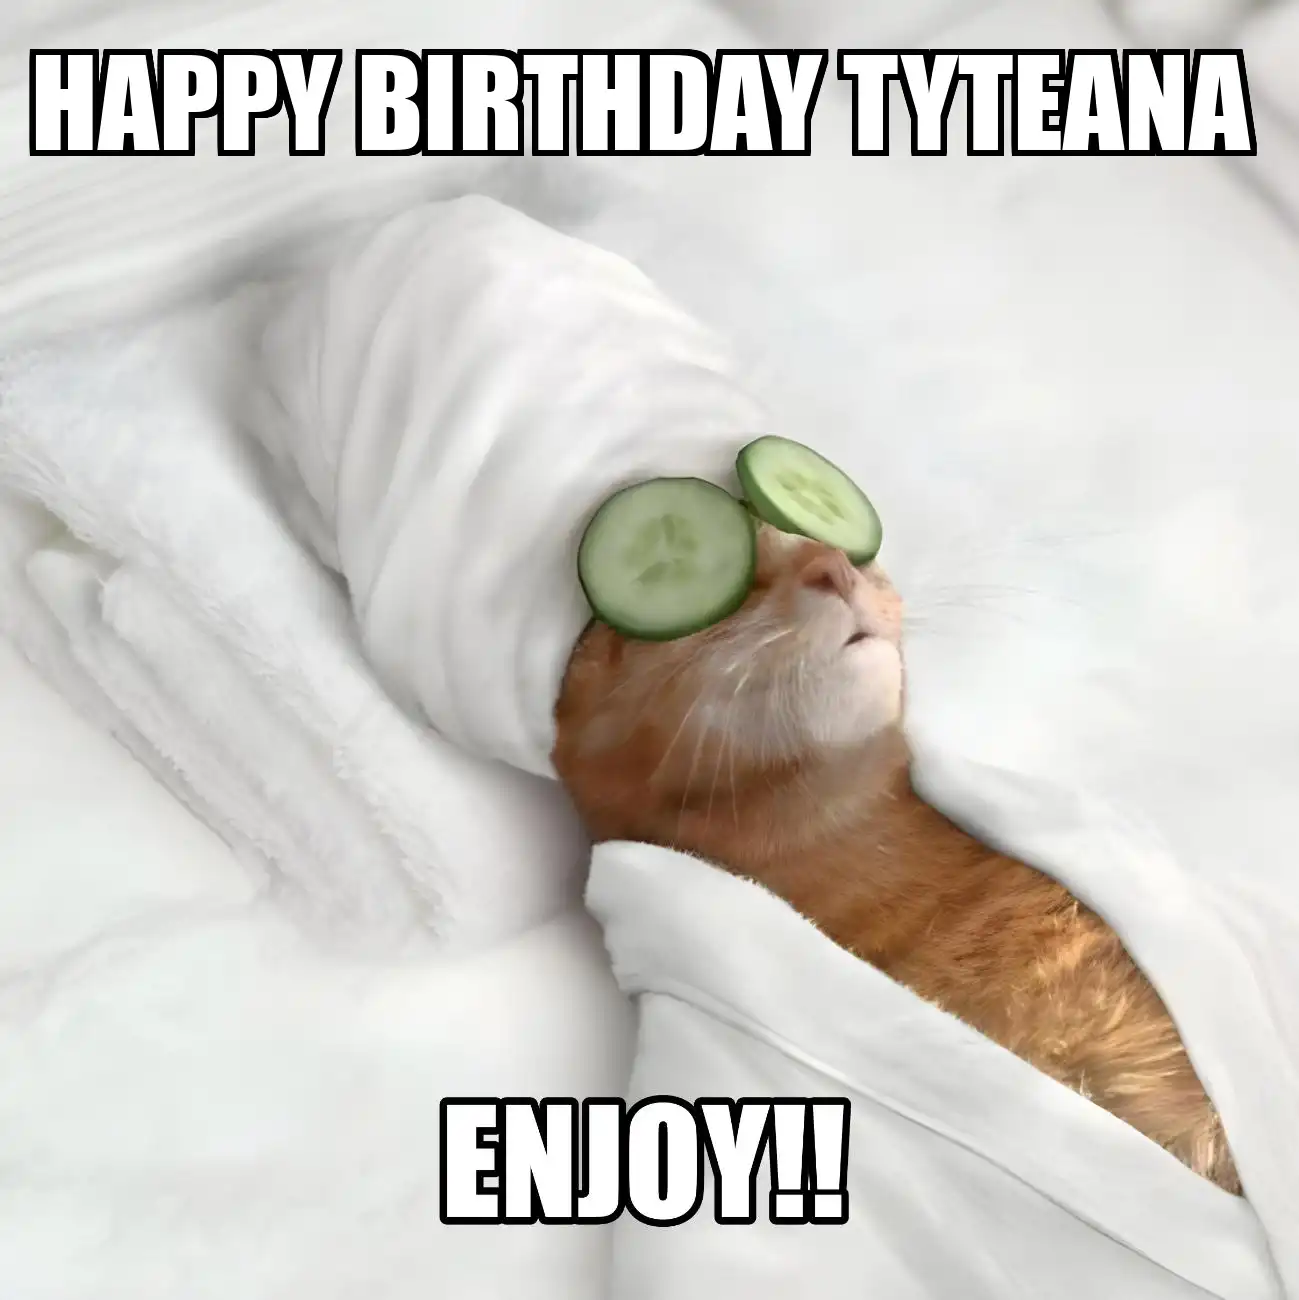 Happy Birthday Tyteana Enjoy Cat Meme